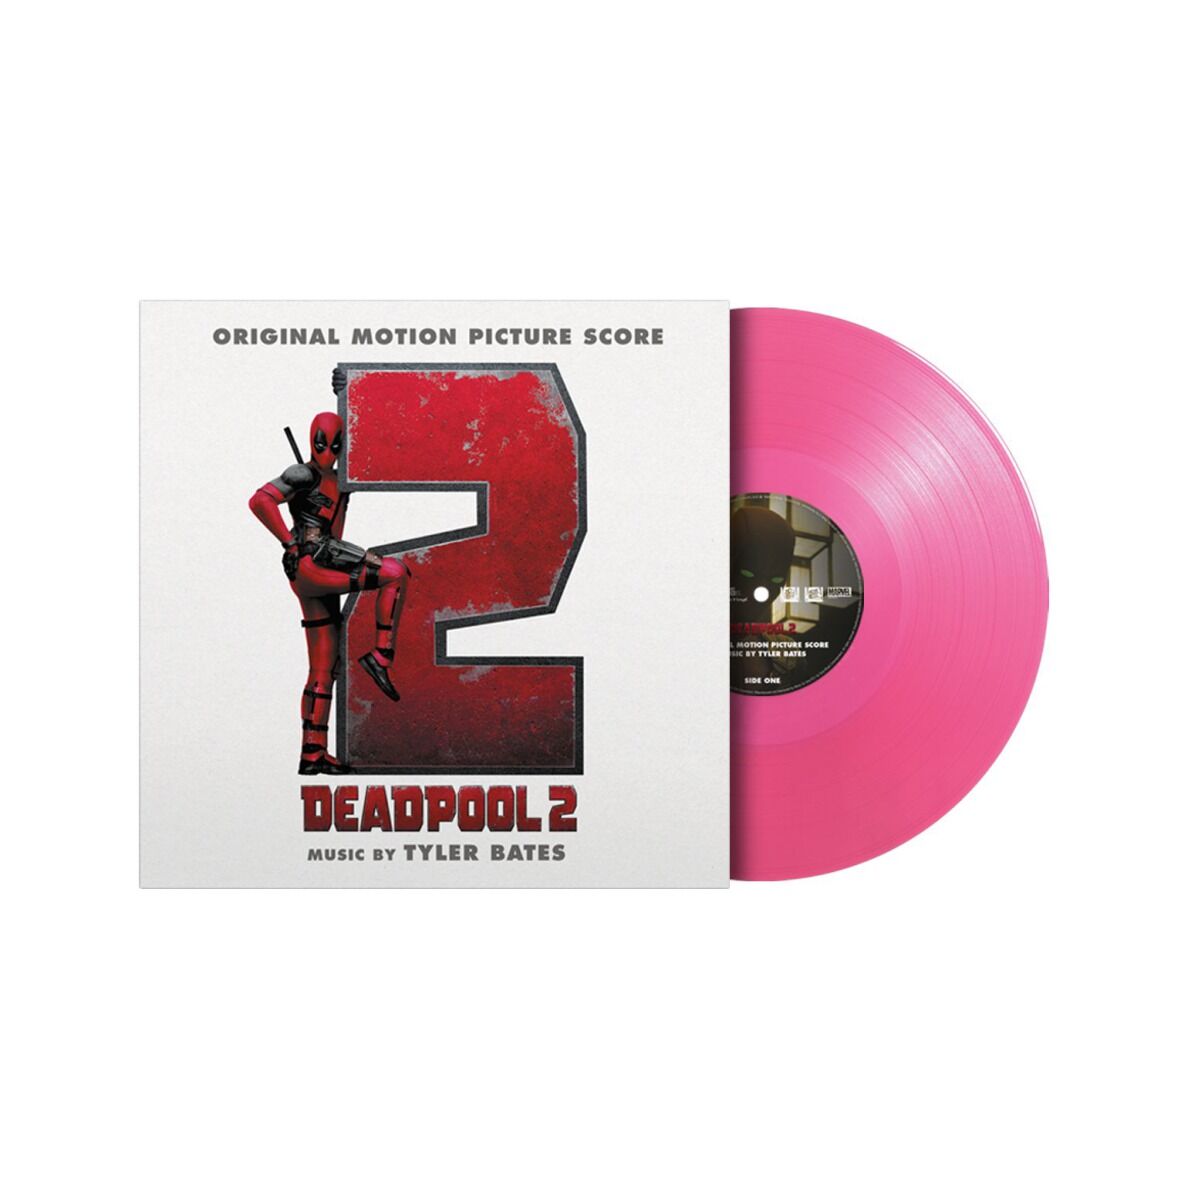 Soundtrack Vinyl Deadpool 2 Original Motion Picture Score Pink Vinyl Rukahore Shop 7561